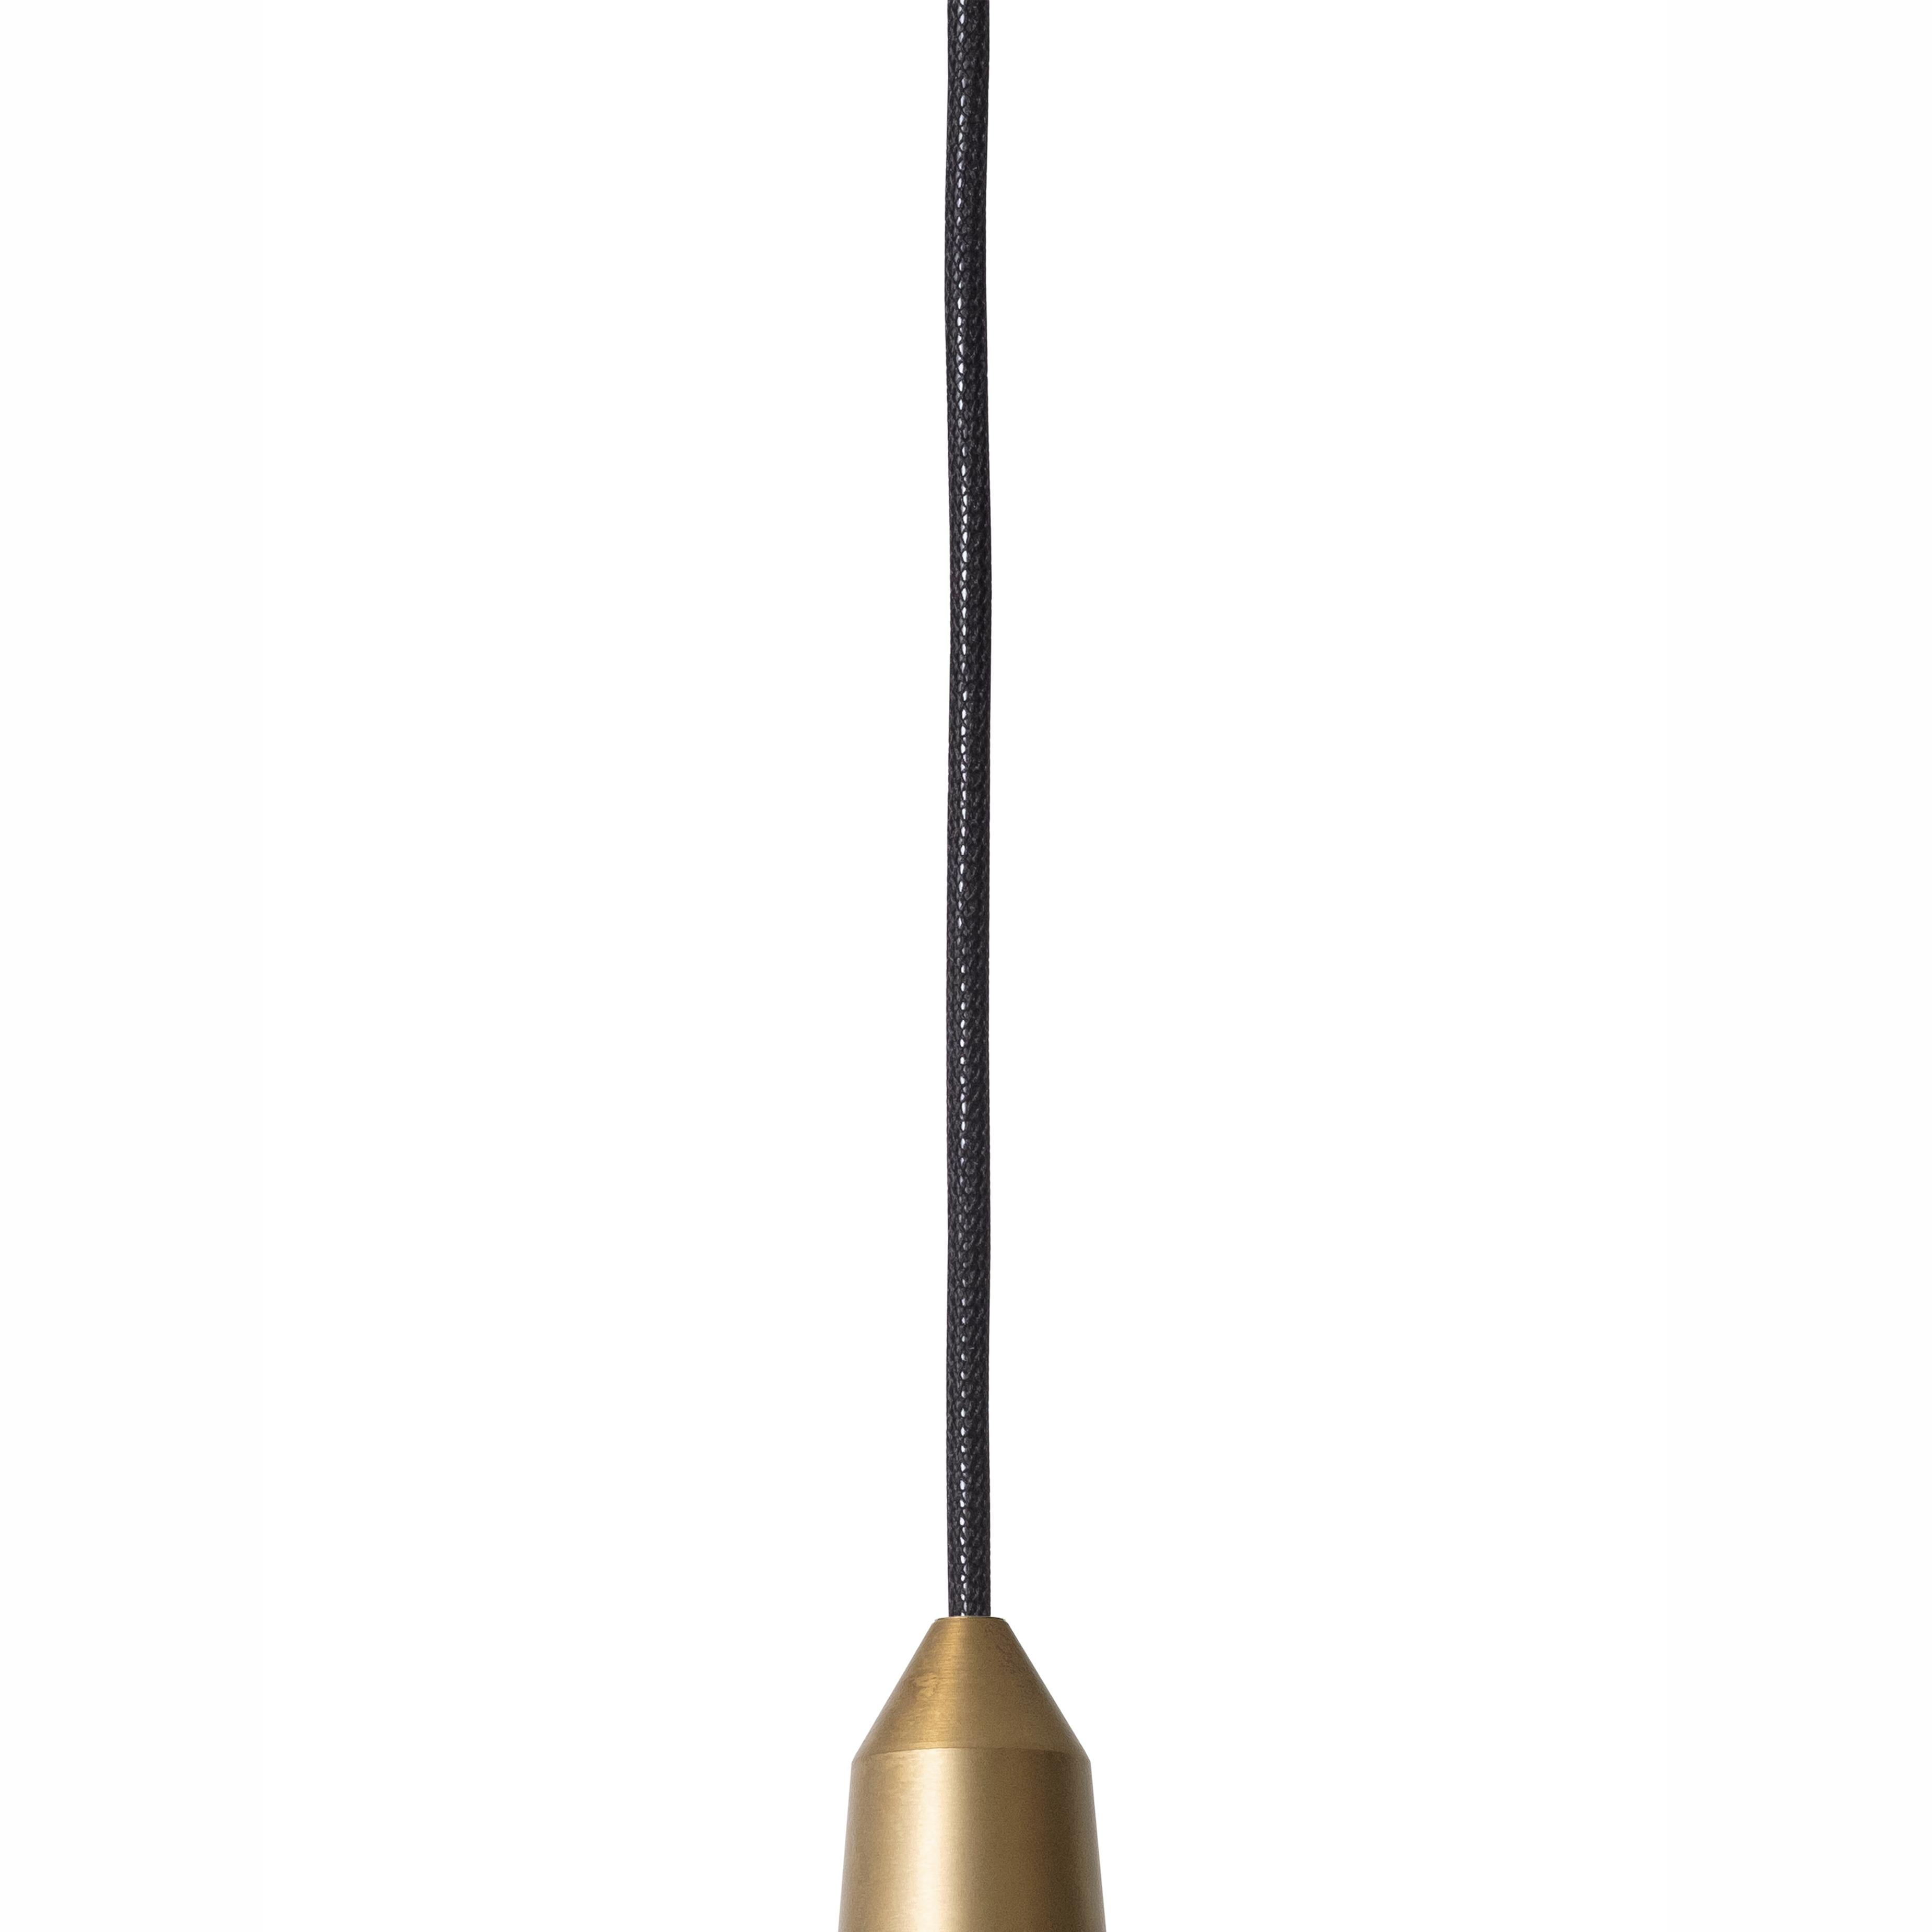 Swedish Henrik Tengler 3492-6 Massiv Lamp by Konsthantverk For Sale